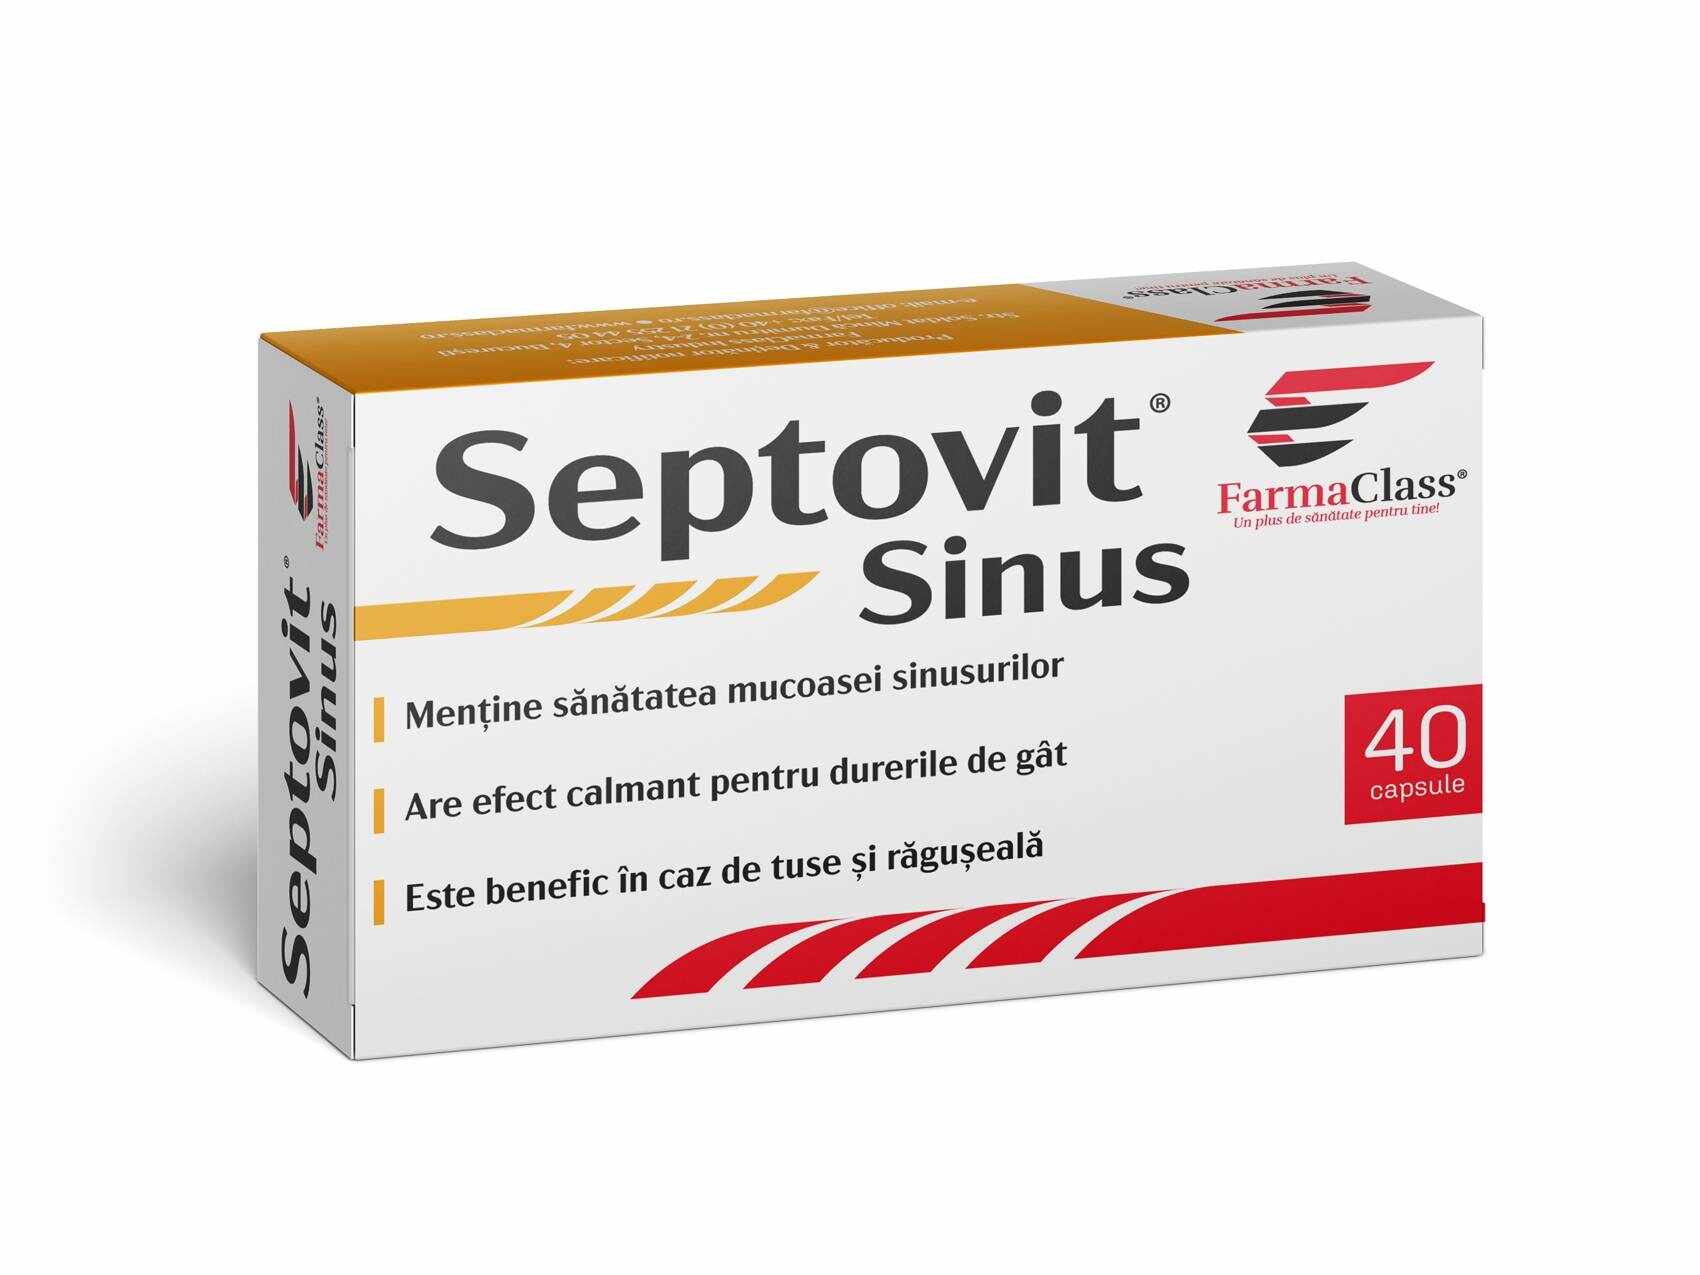 SEPTOVIT SINUS, 40 capsule, FARMA CLASS